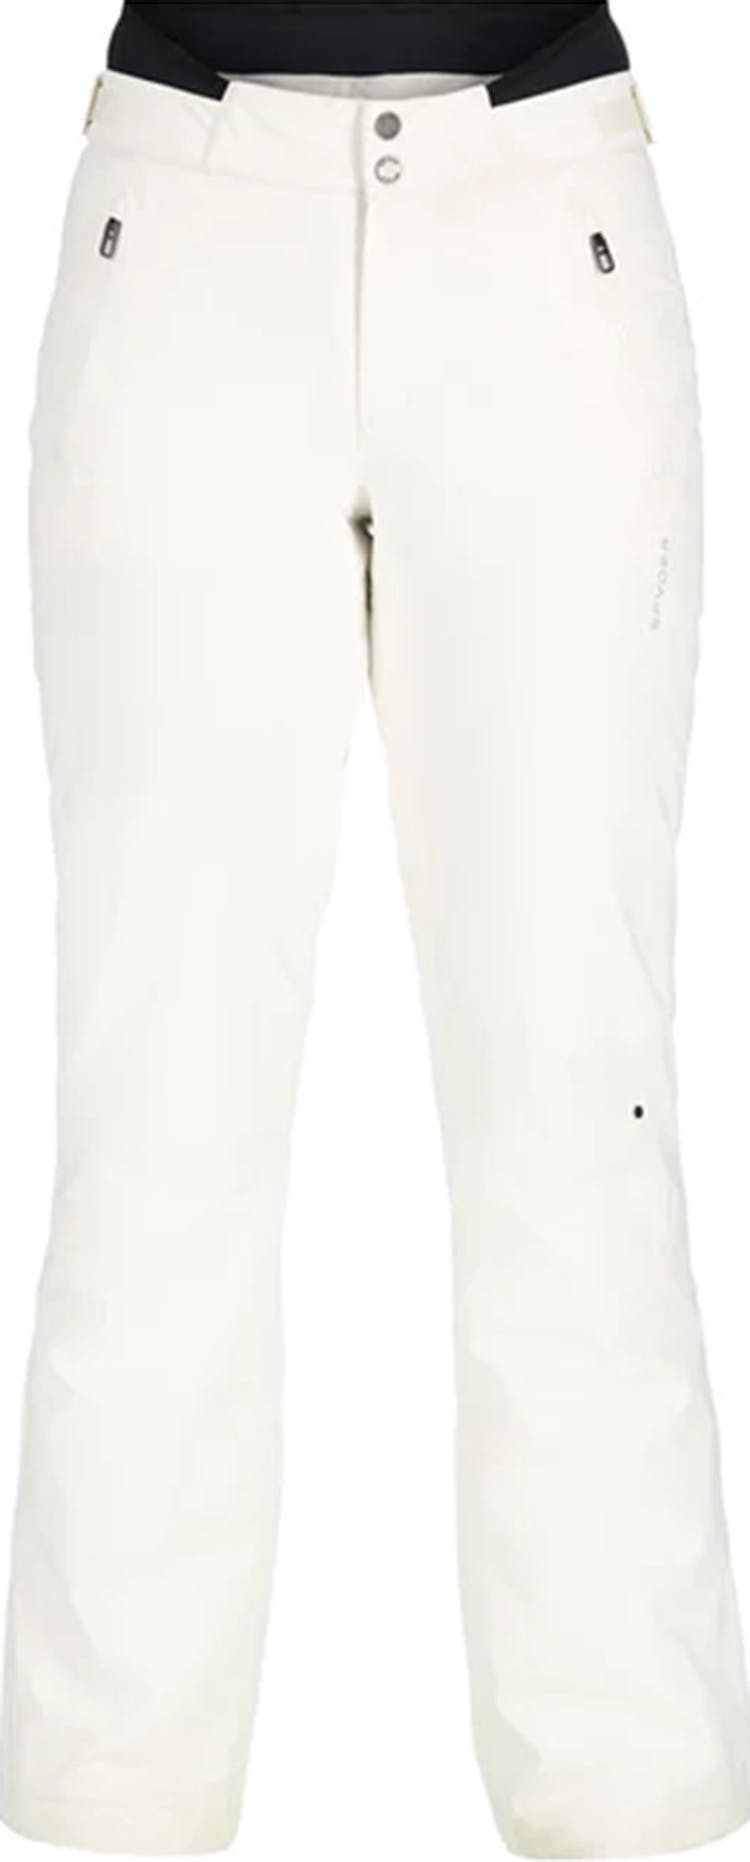 Numéro de l'image de la galerie de produits 2 pour le produit Pantalon de ski All-Mountain Echo - Femme